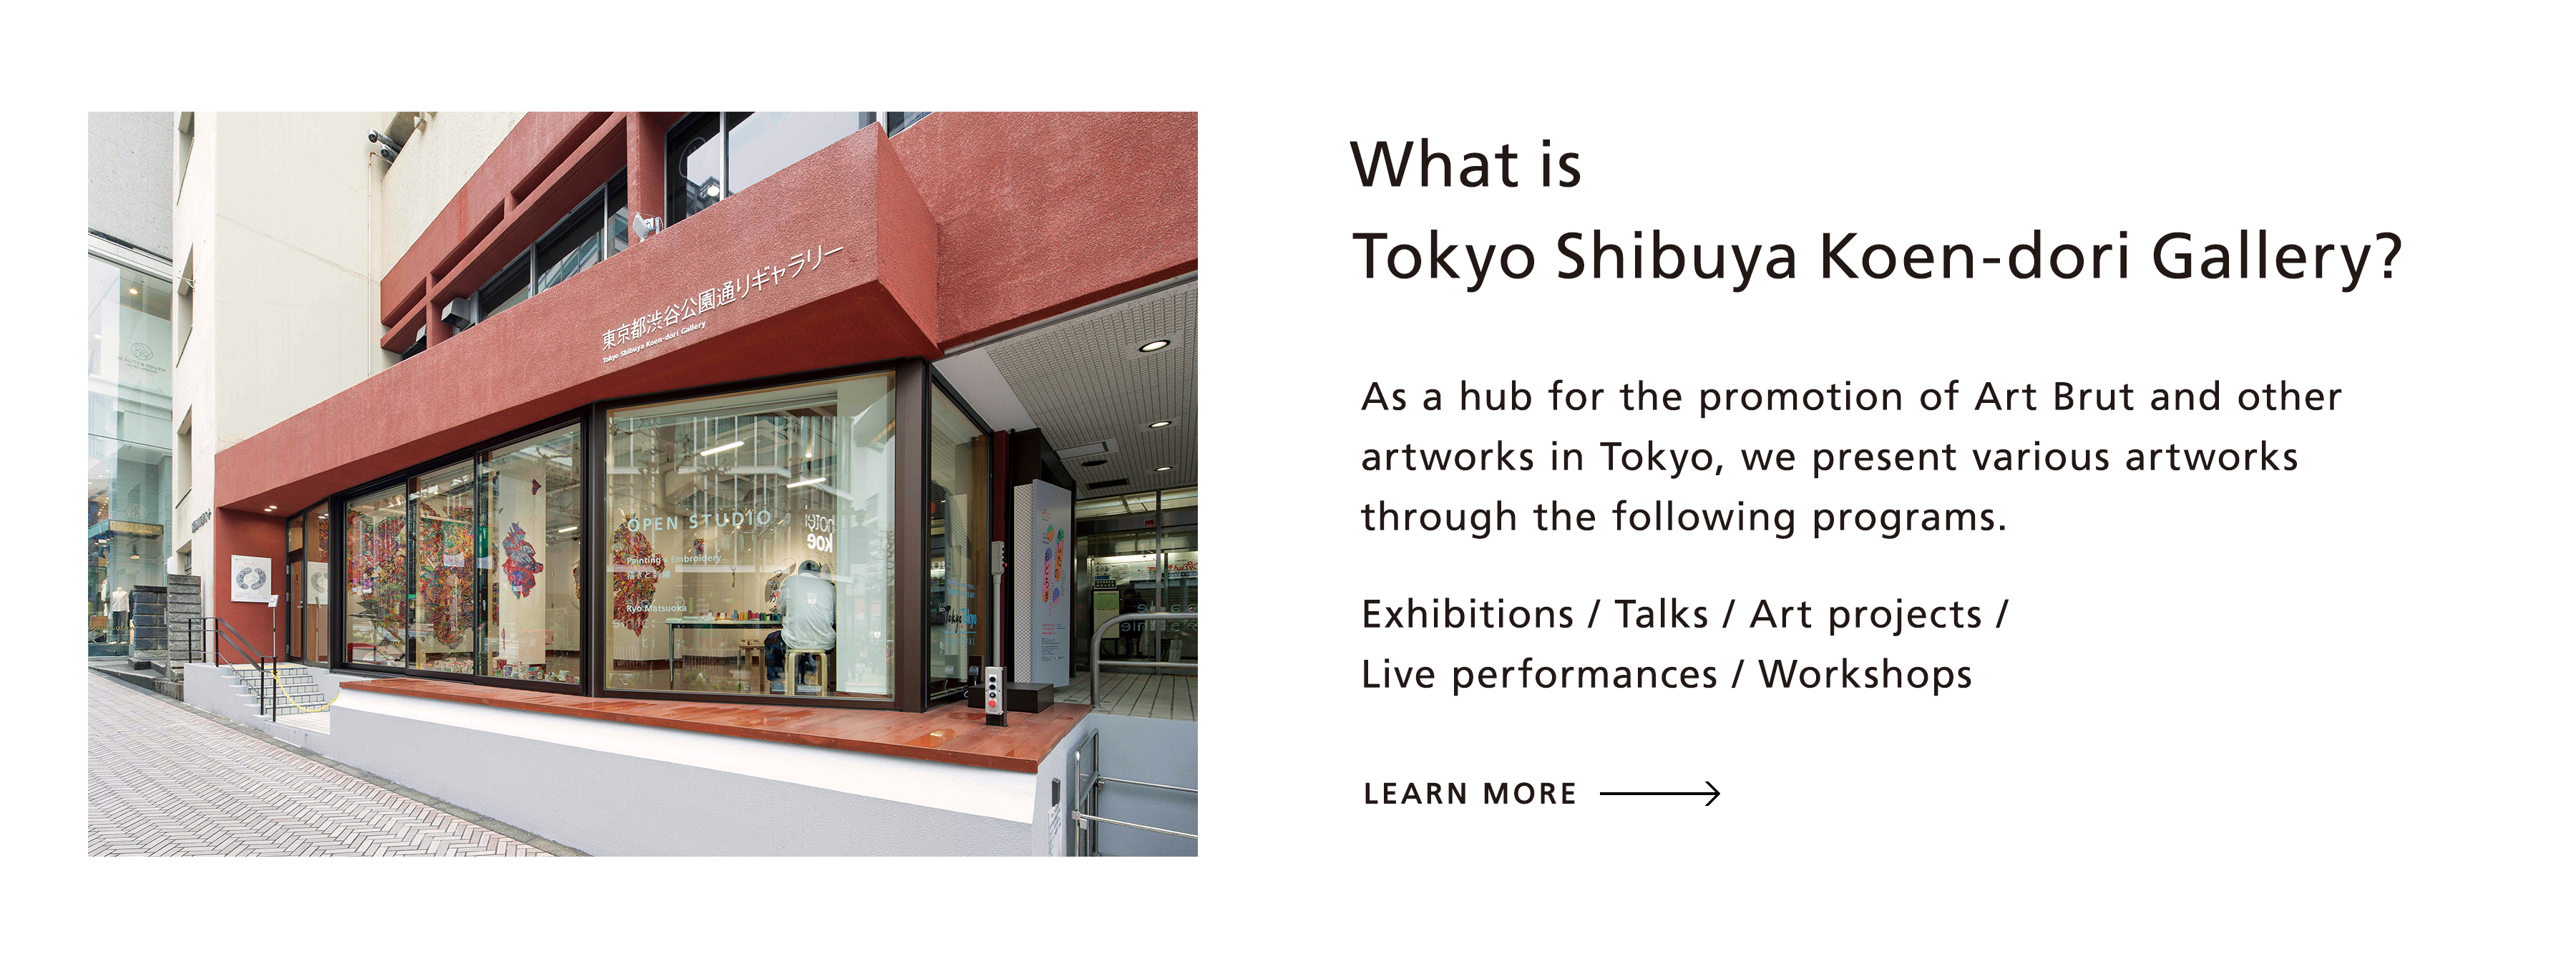 What is Tokyo Shibuya Koen-dori Gallery?